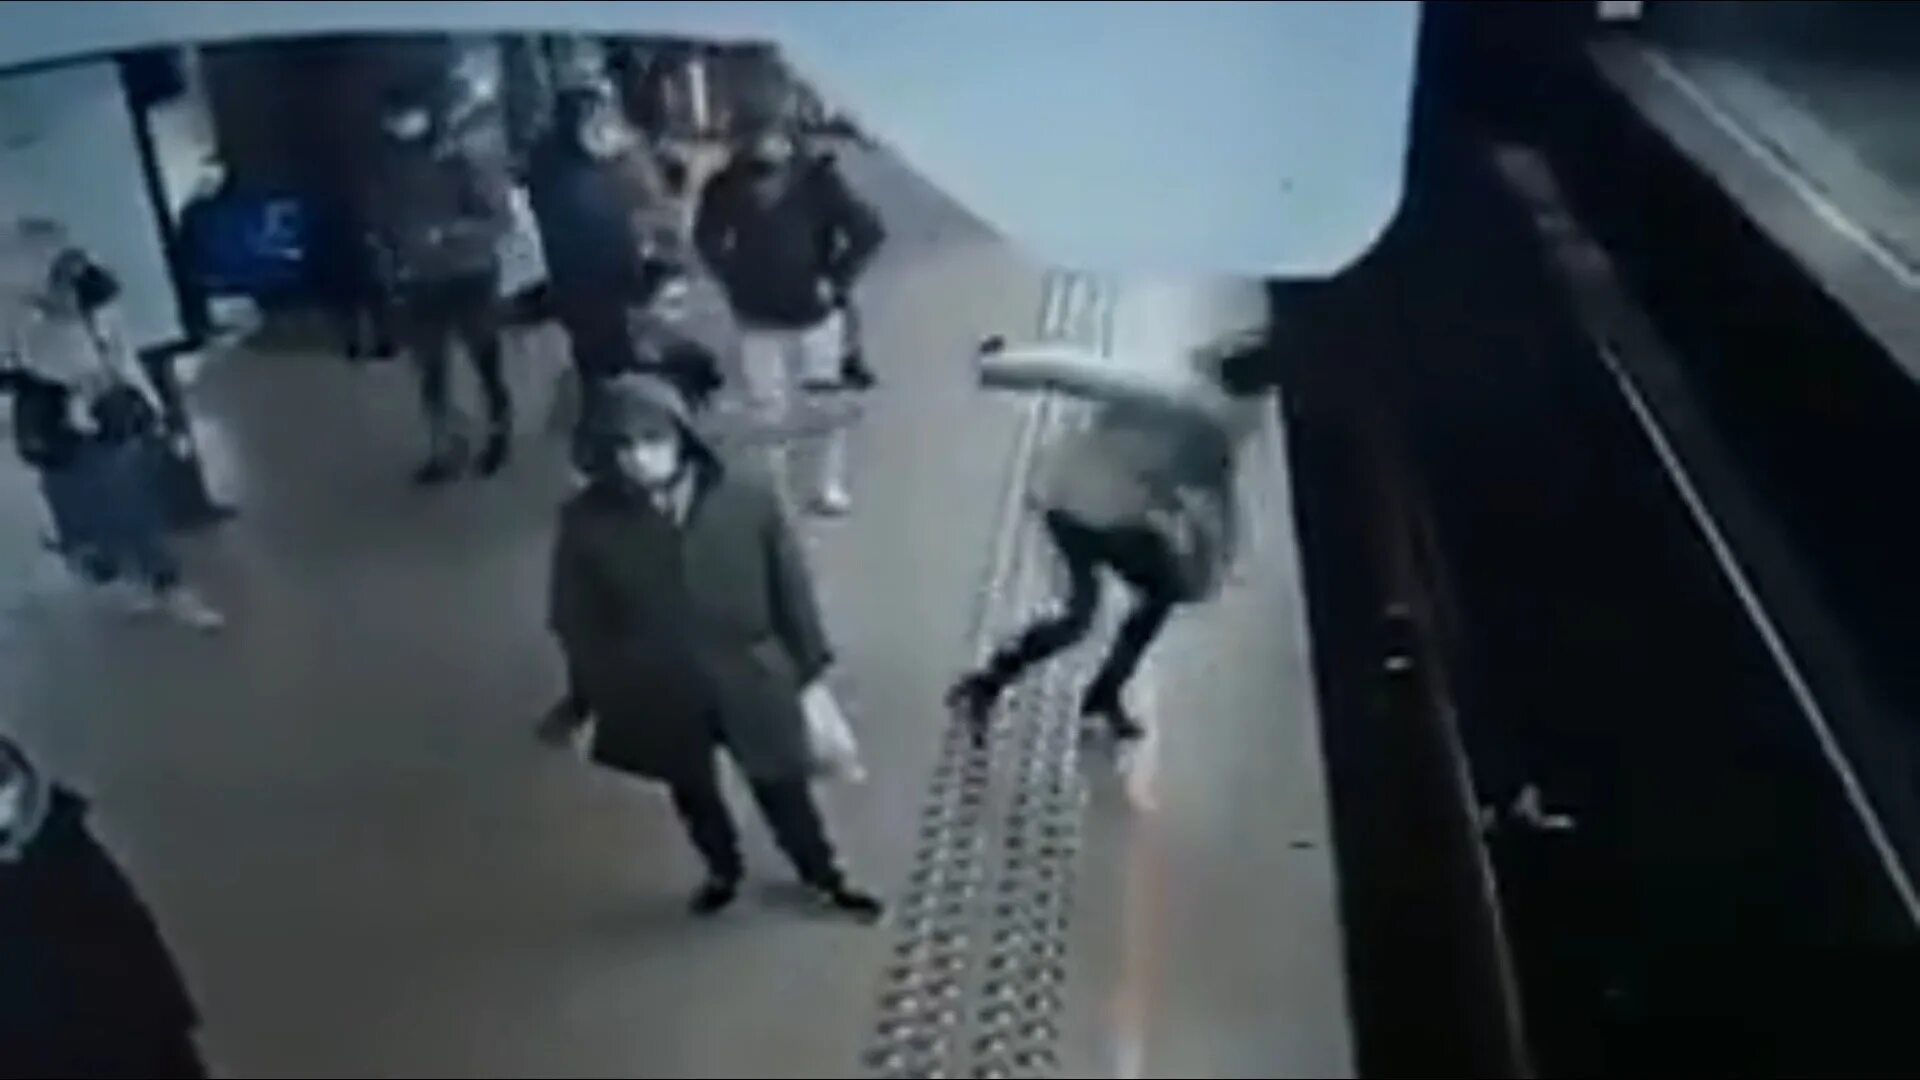 Парень столкнул женщину в метро. Толкнул под поезд в метро.